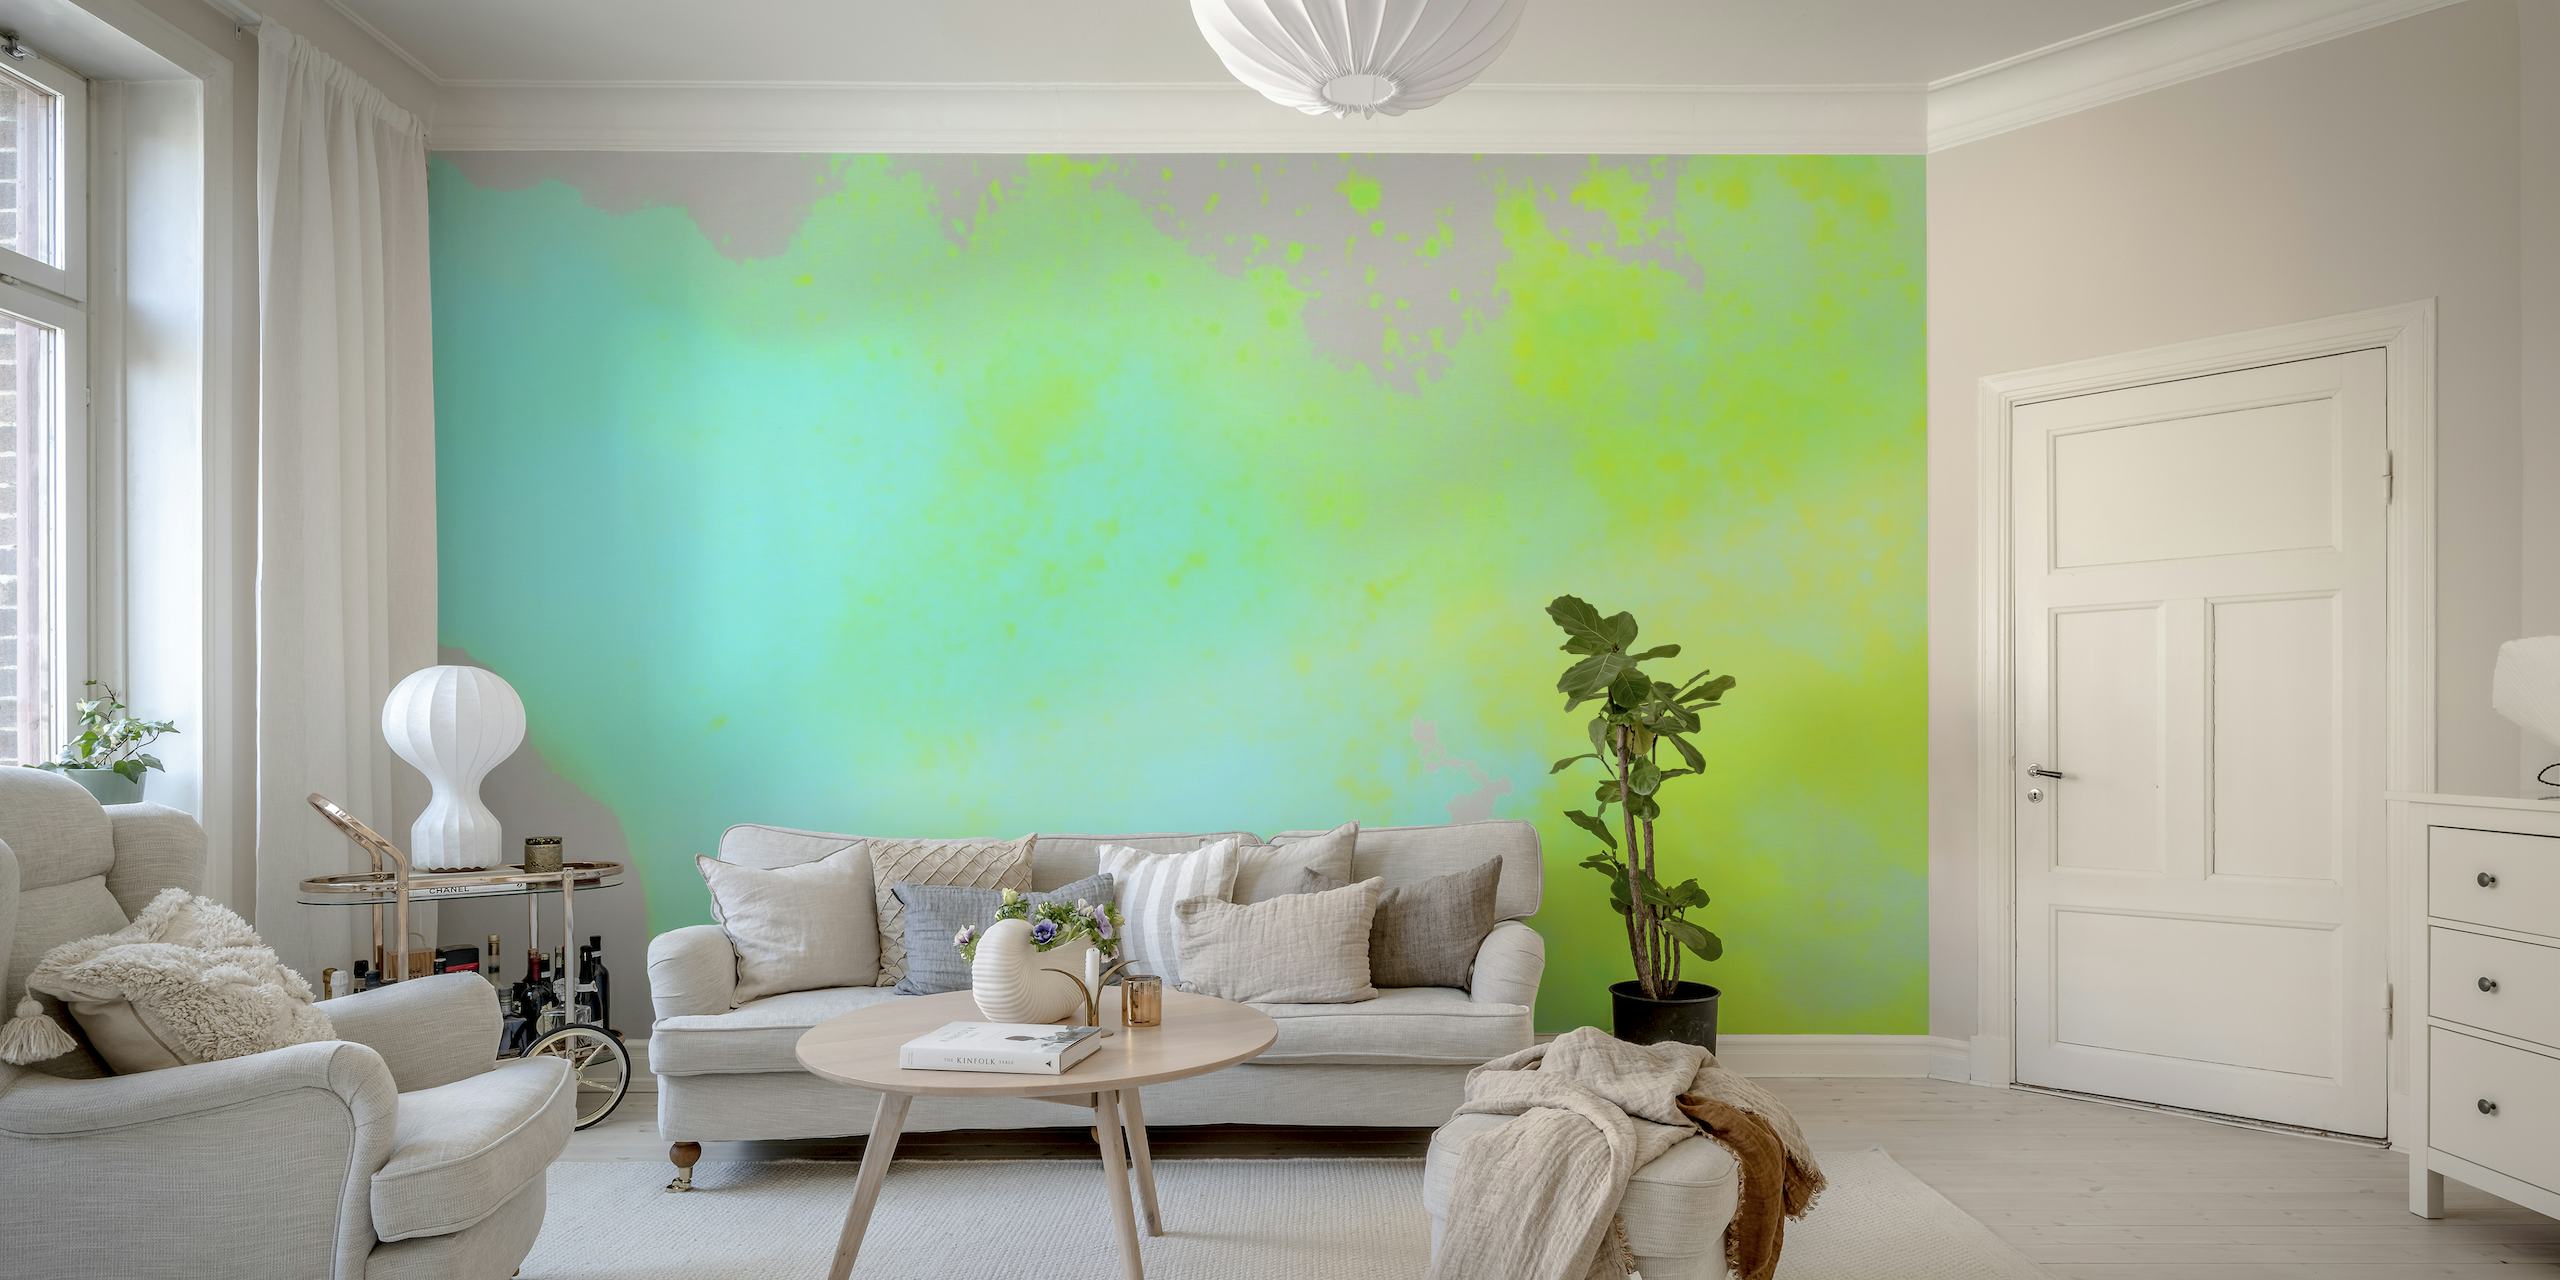 Apstraktna umjetnička zidna slika s neonskom bojom sa svijetlim i živim bojama.